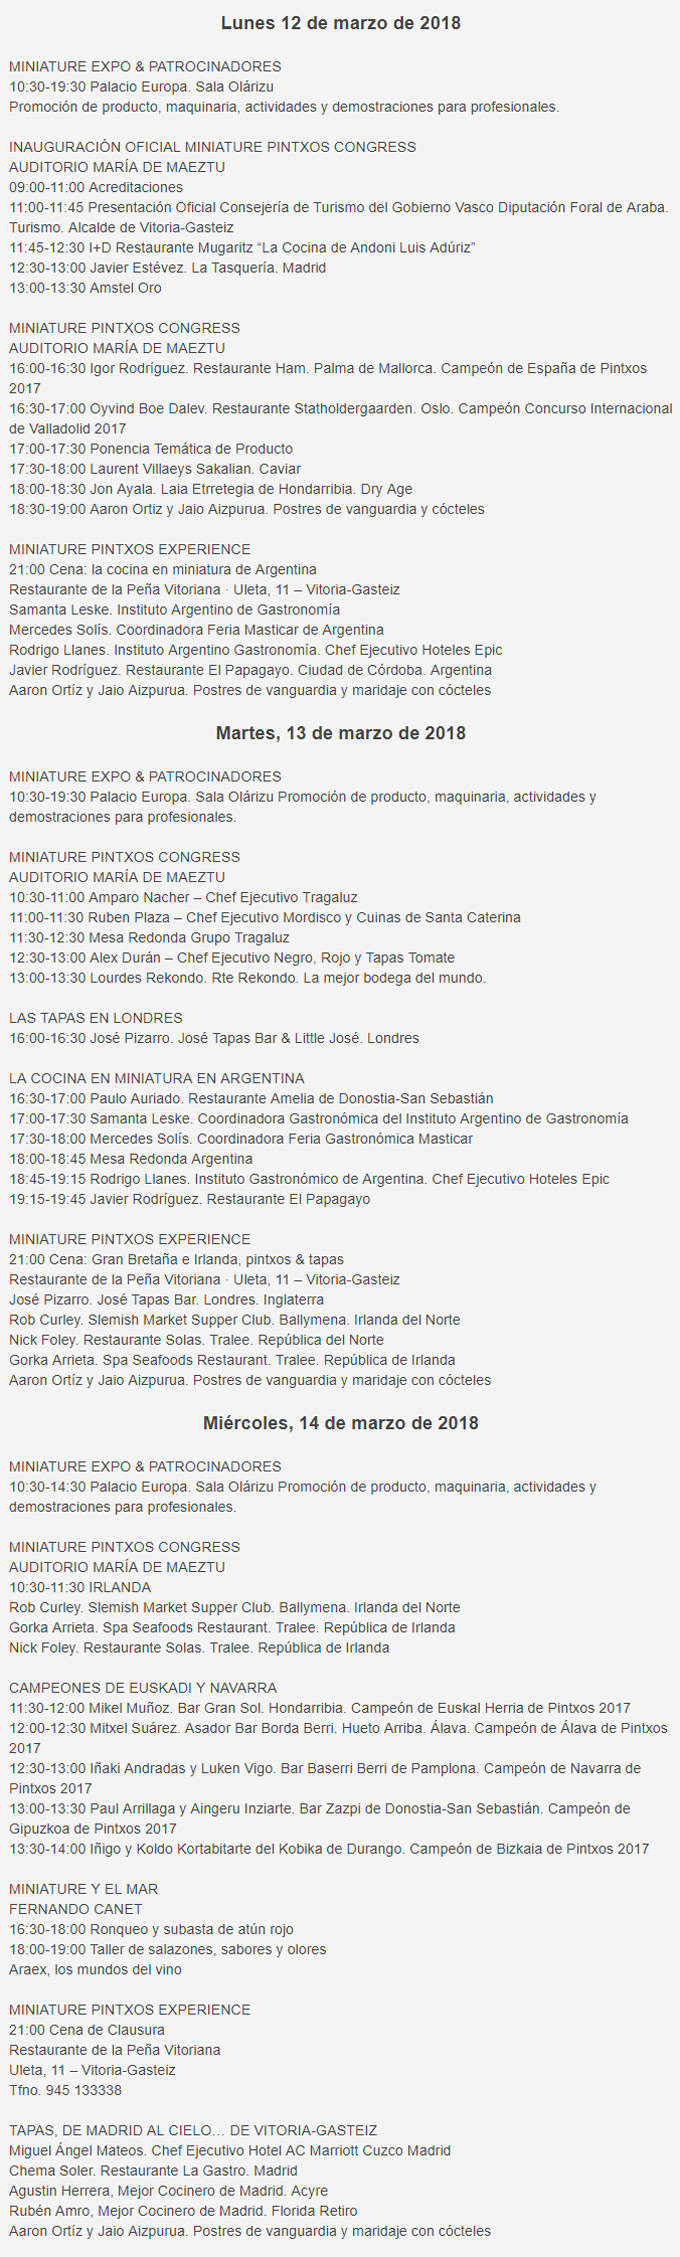 Congreso de Pinchos Miniature 2018